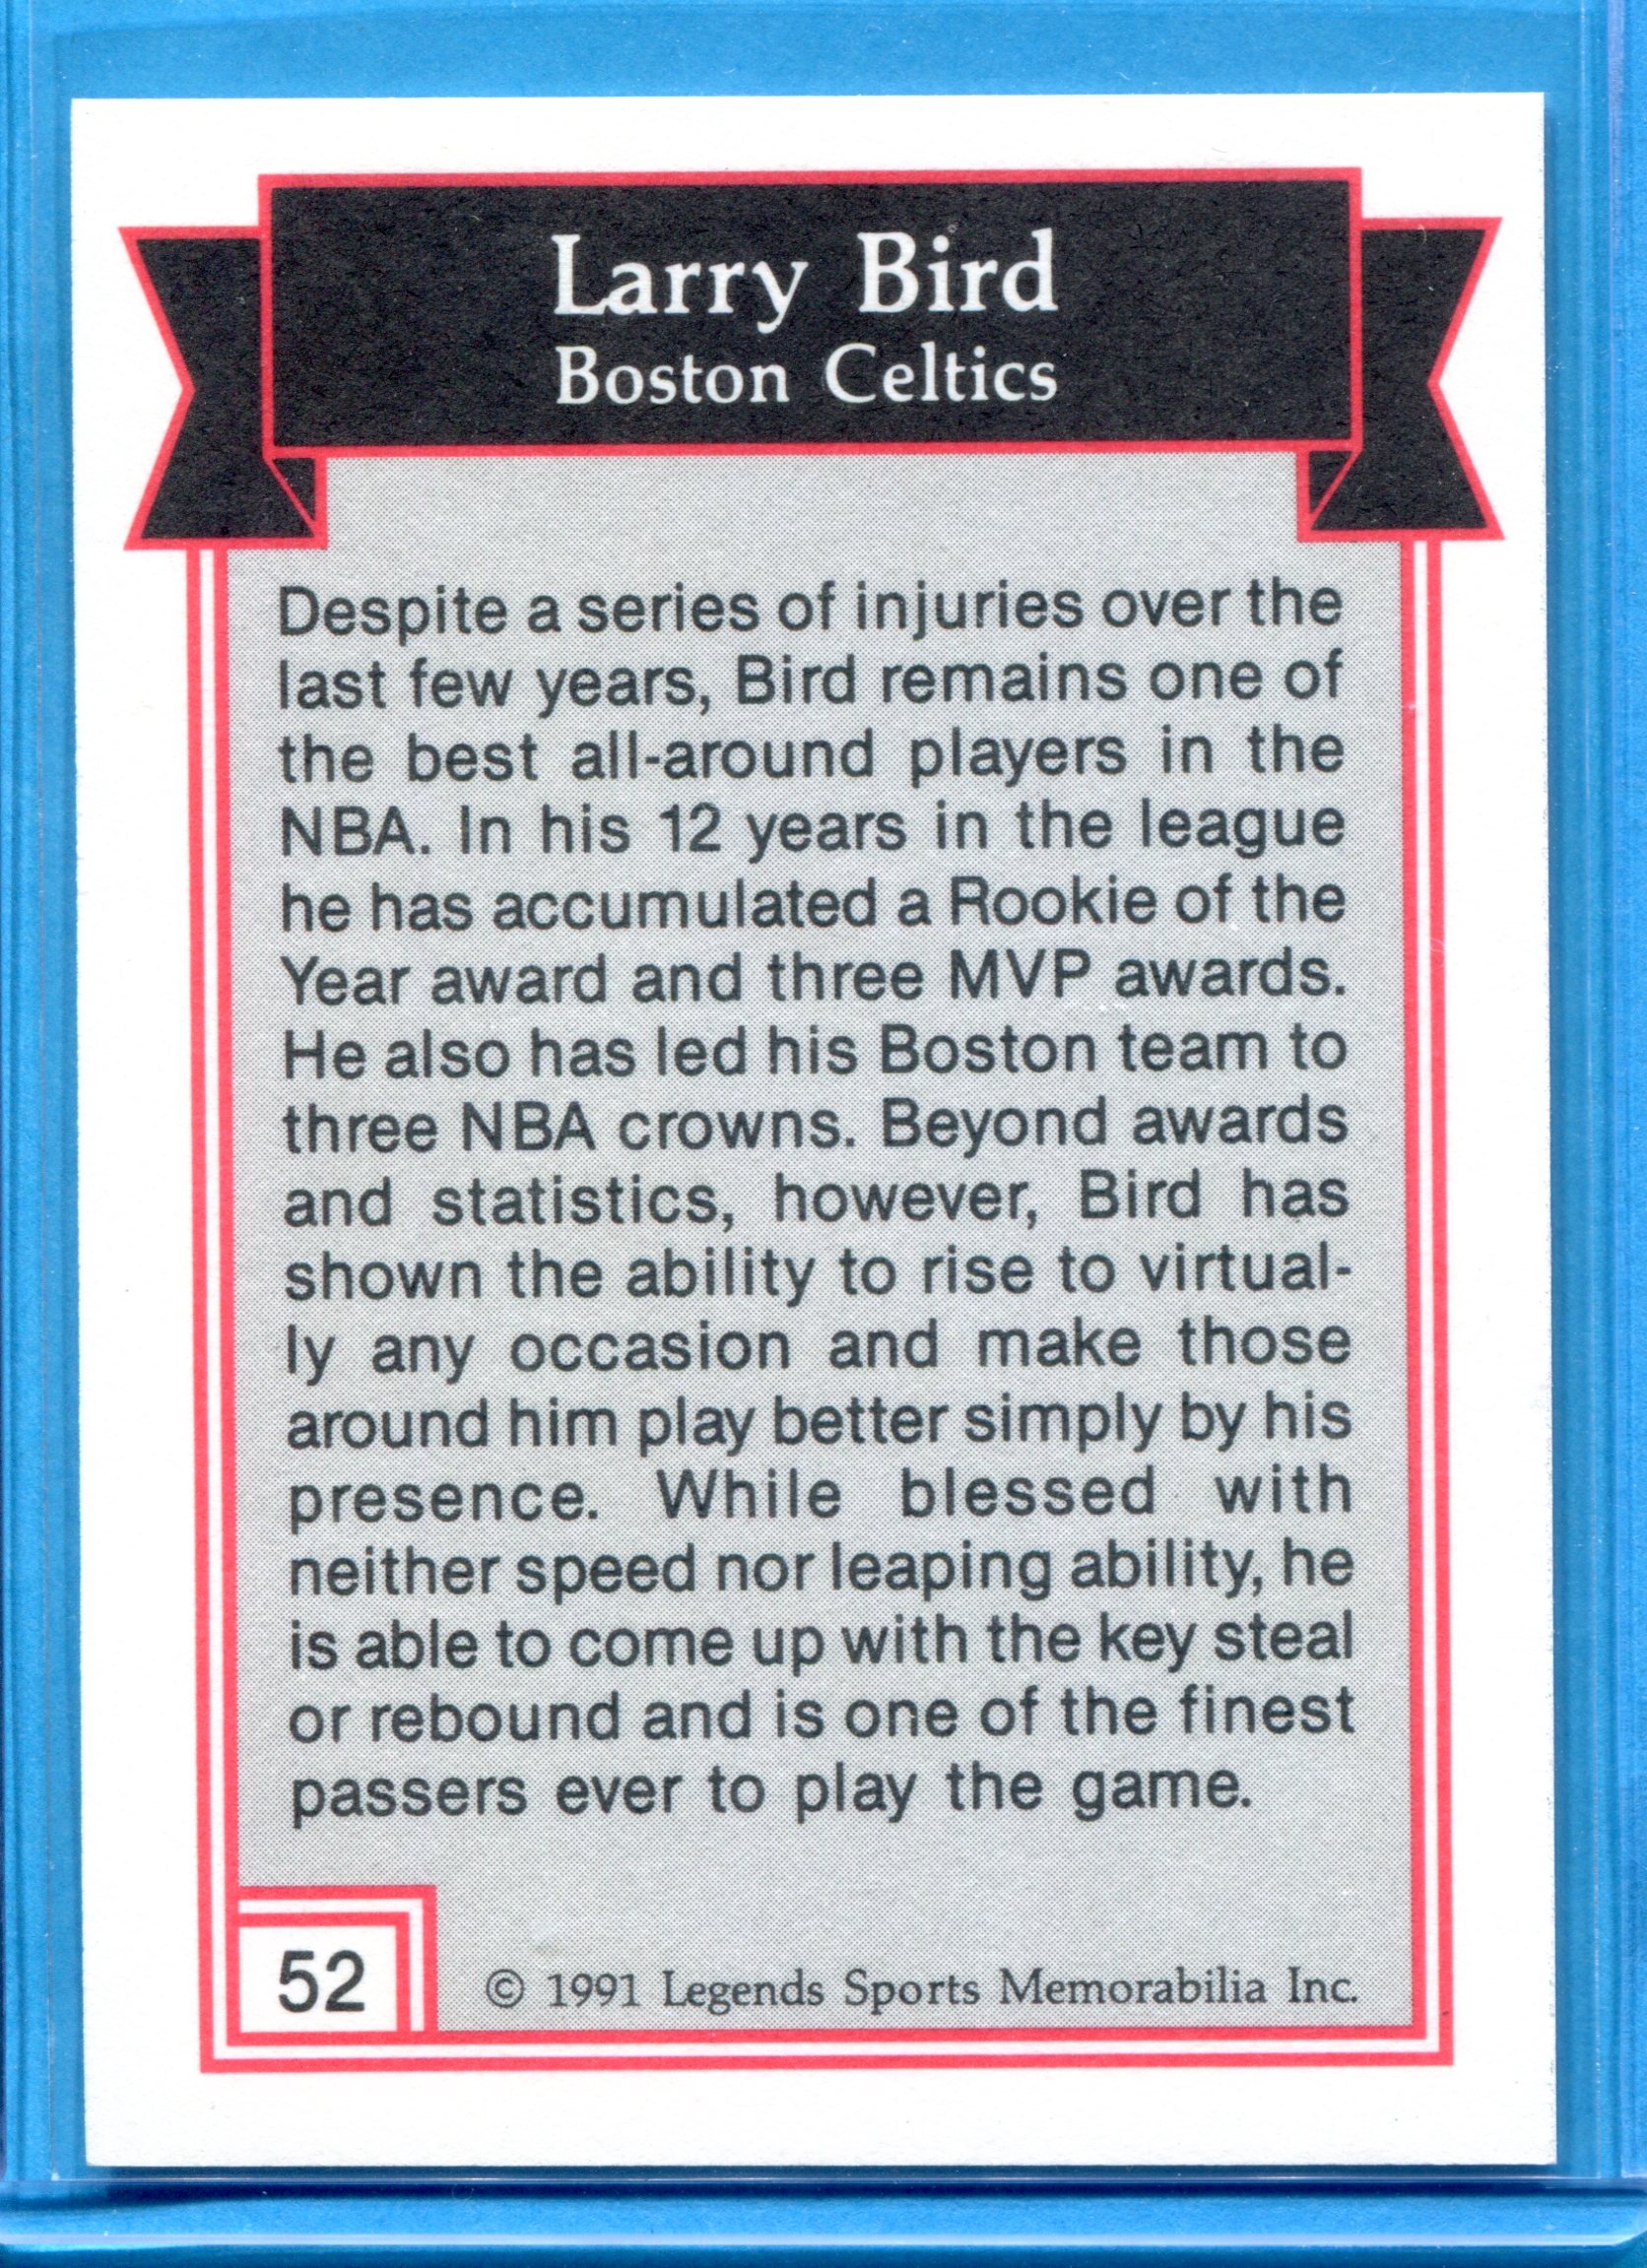 1991 Legends Silver Foil Card #52 Larry Bird back image